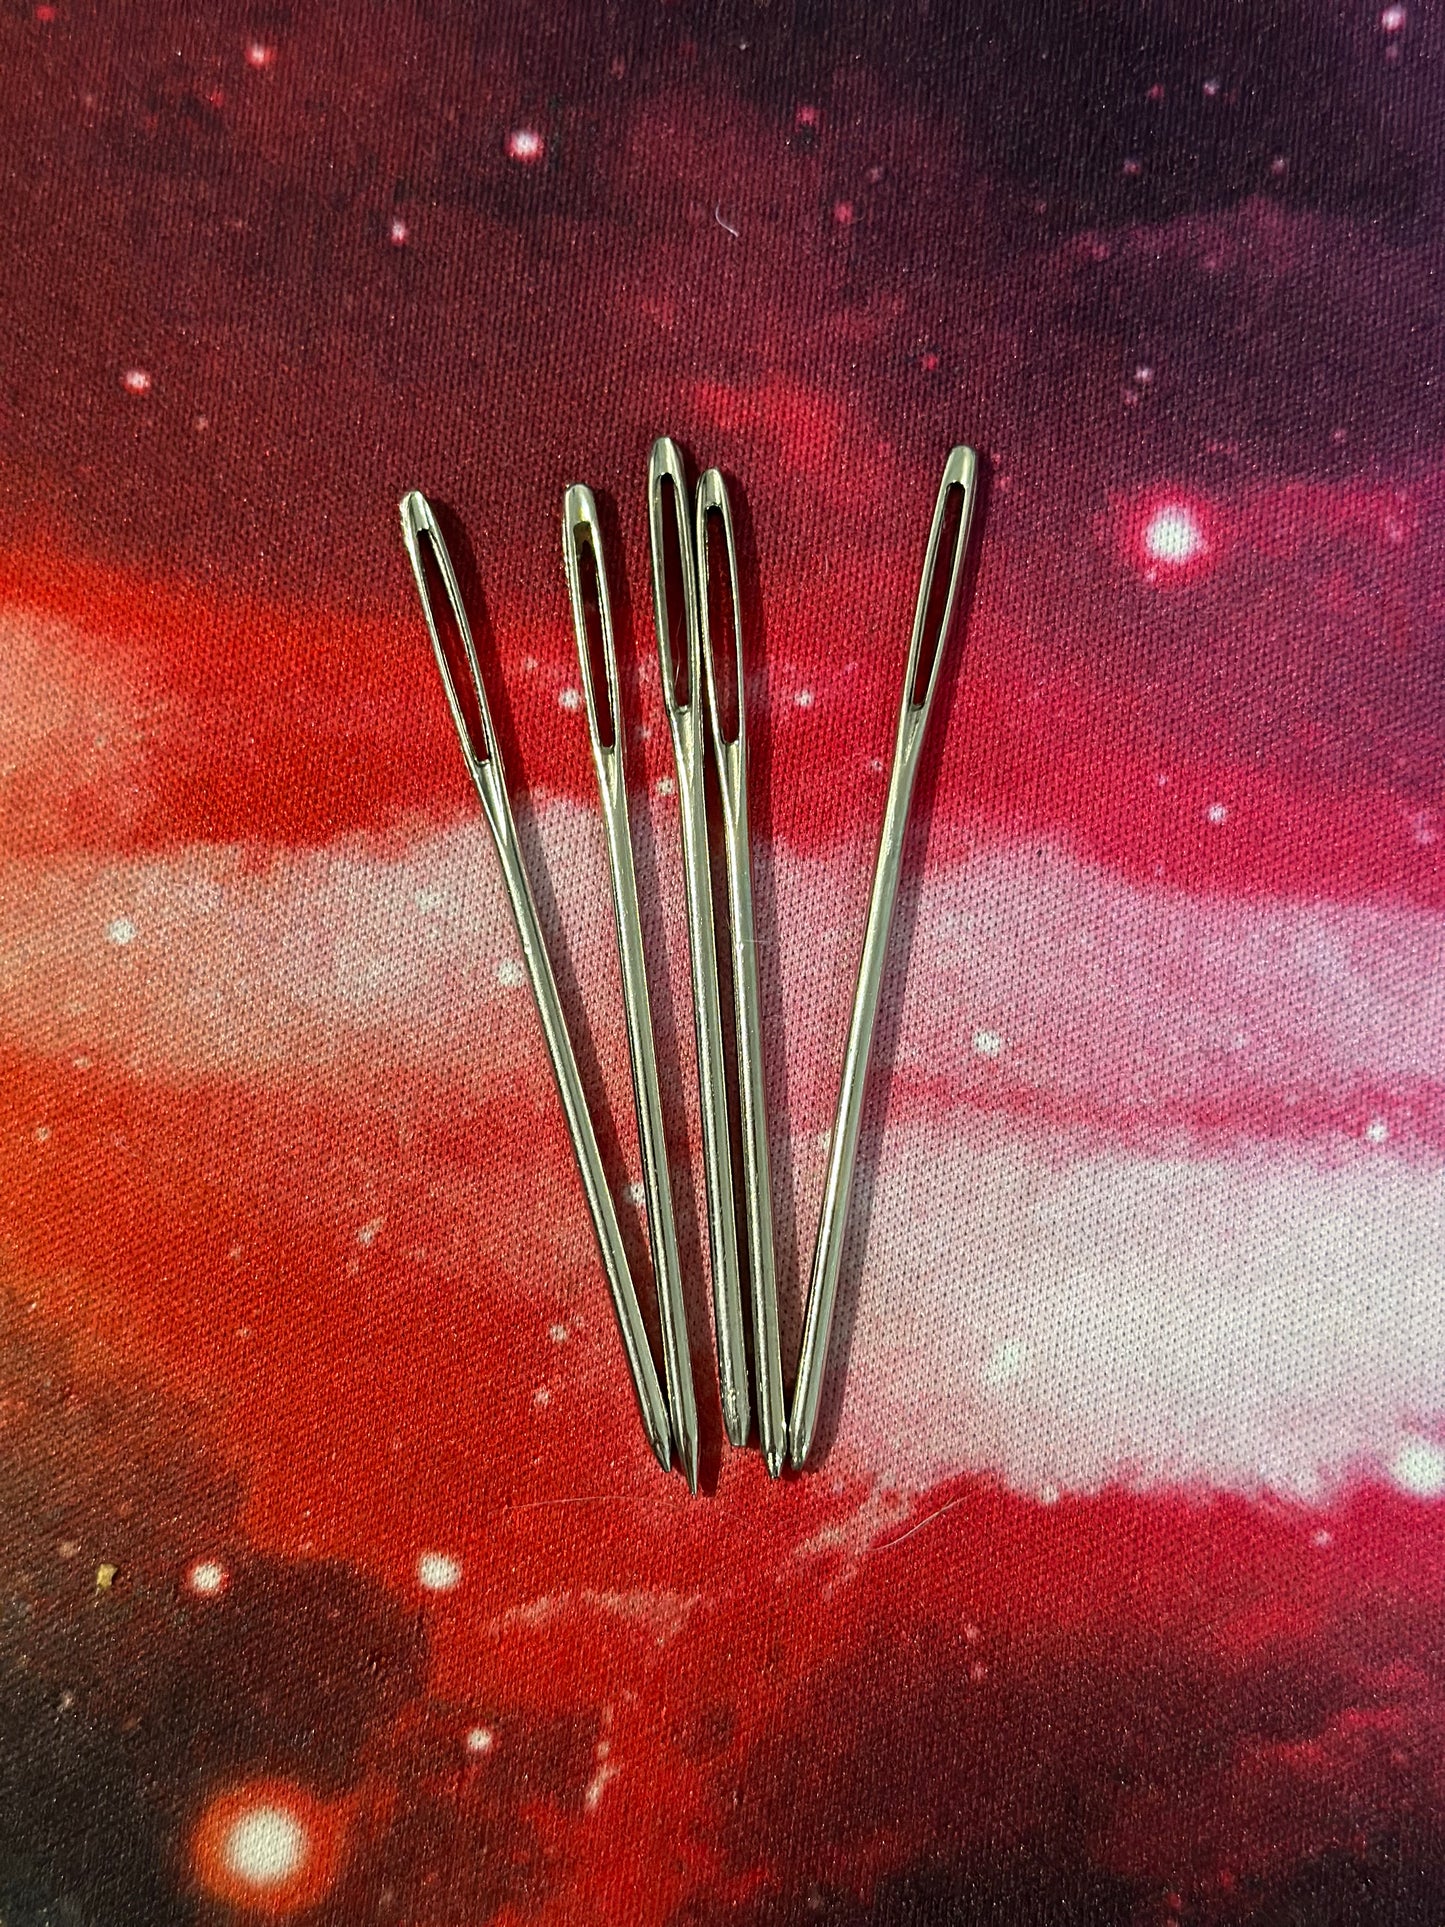 5 pack of metal sewing needles